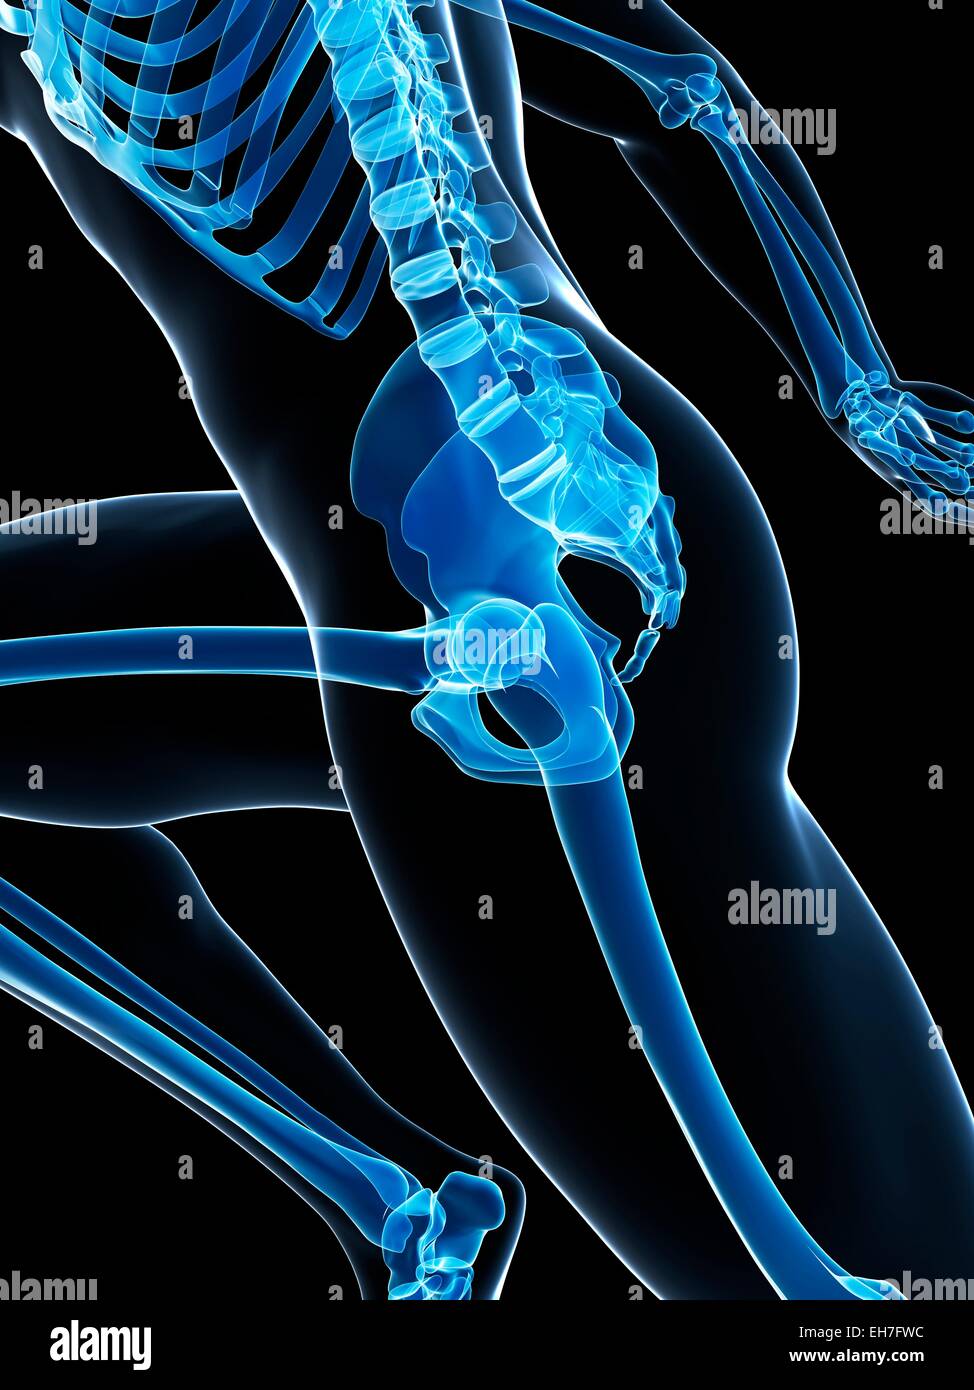 Skeletal system of runner, artwork Stock Photo